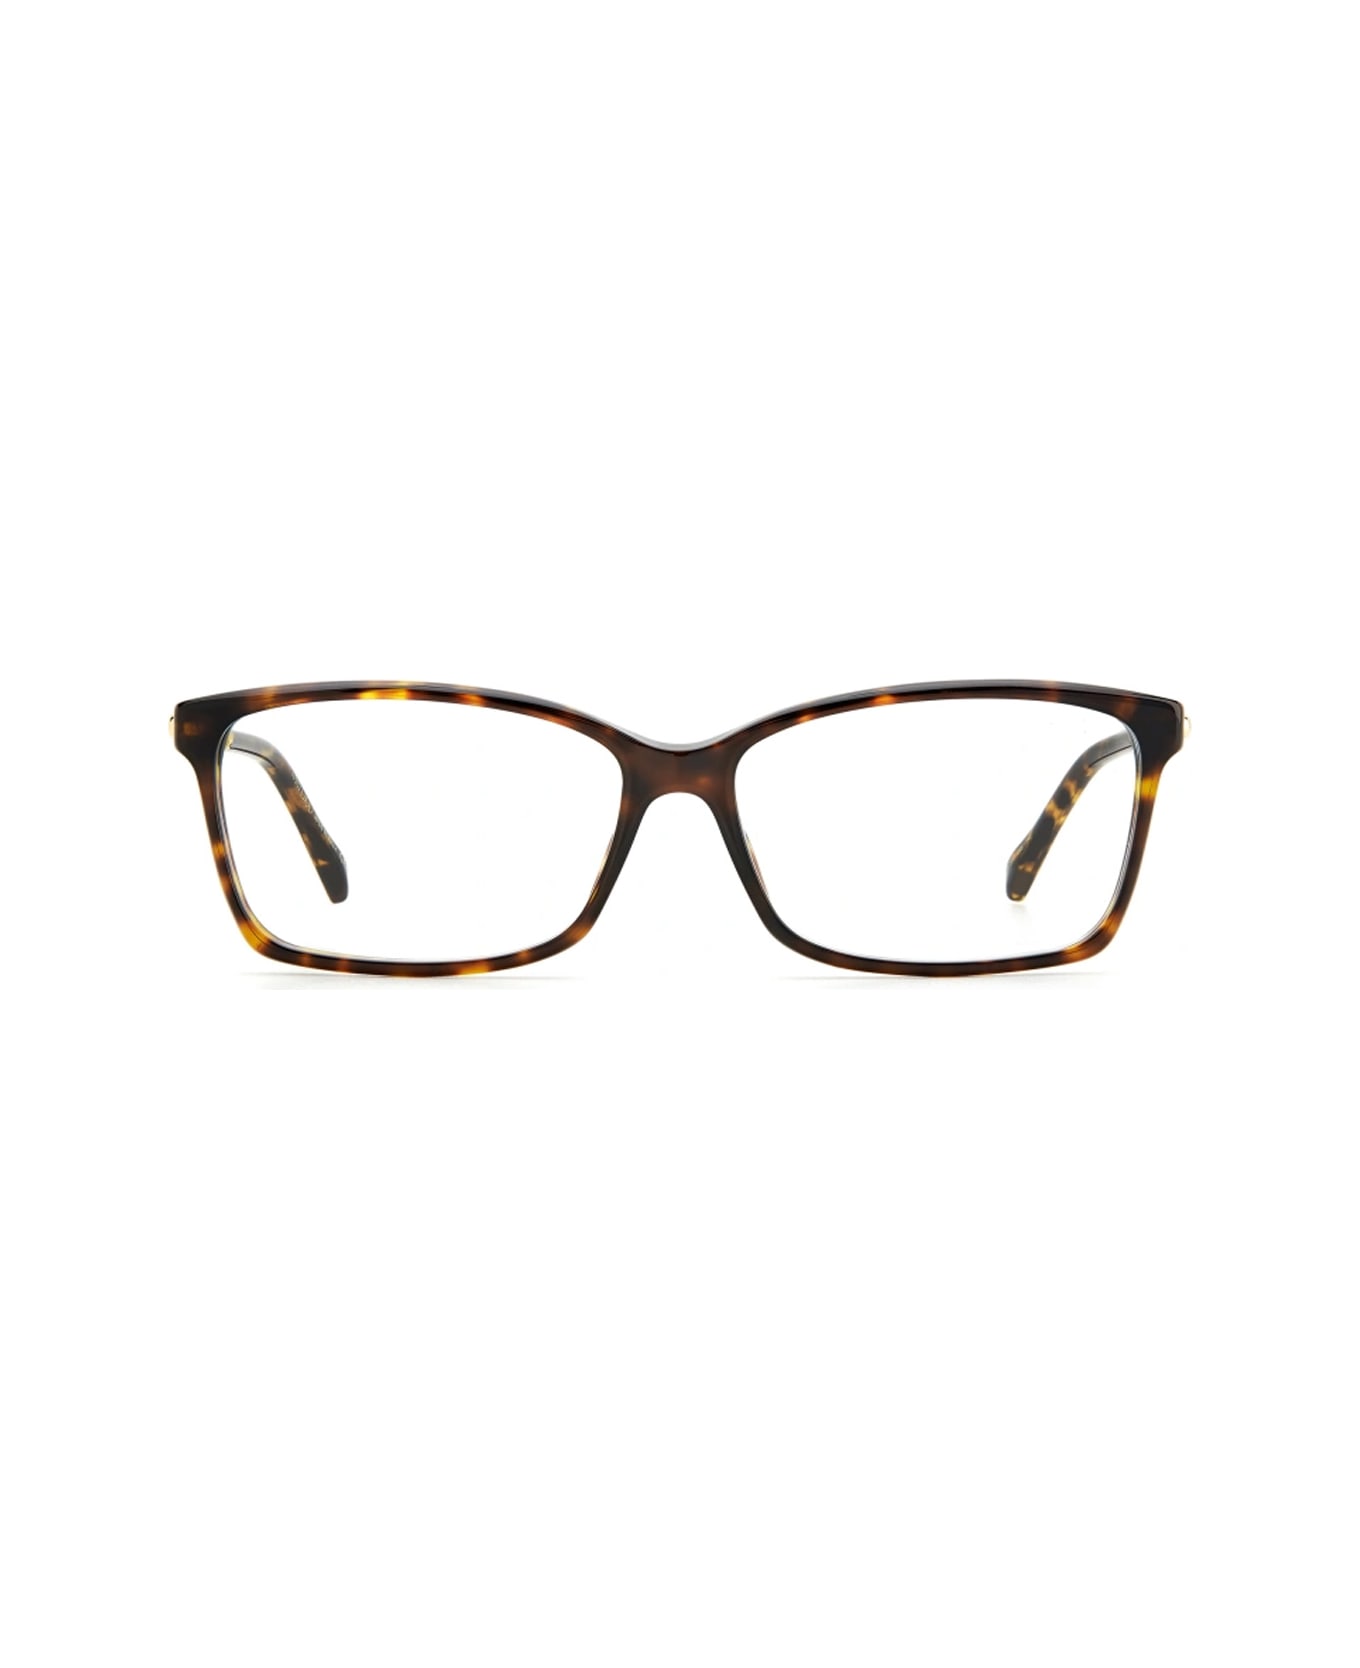 Jimmy Choo Eyewear Jc332 086/14 Havana Glasses - Marrone